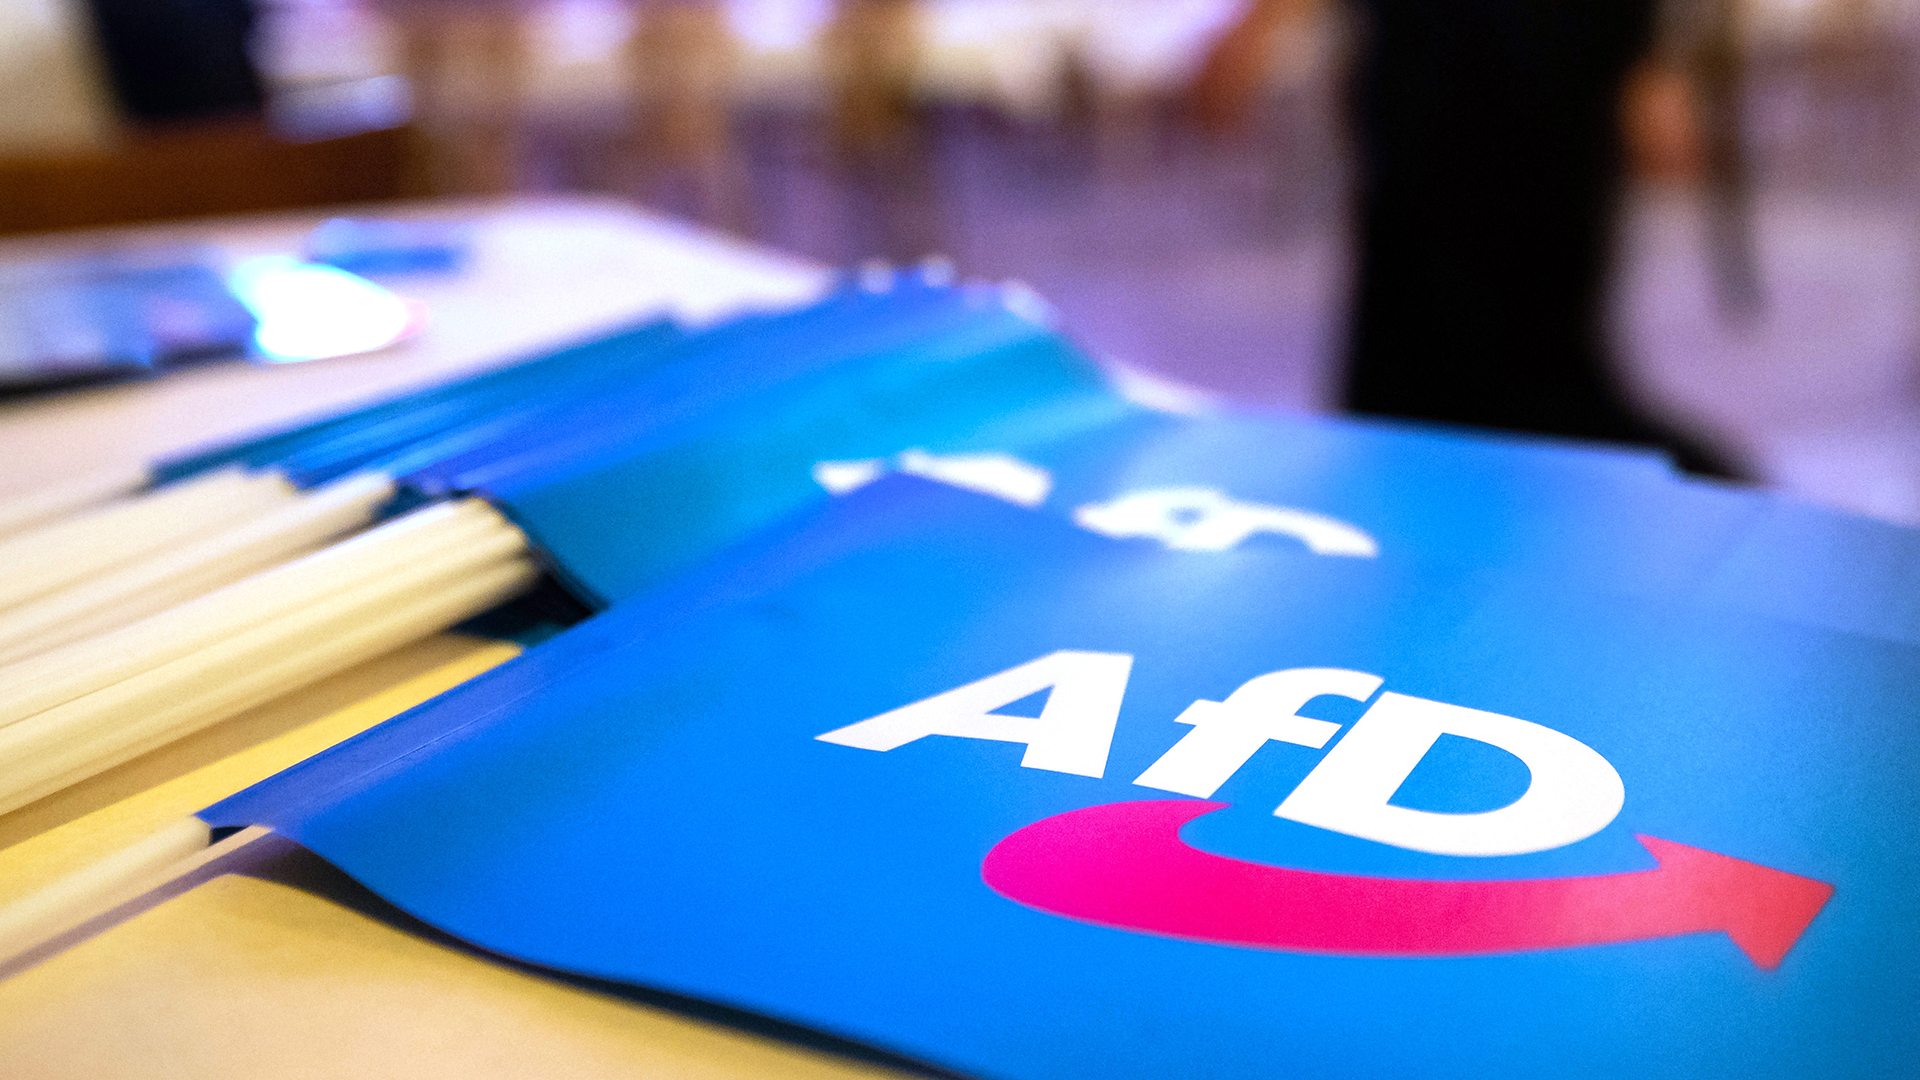 Papierfahnen mit dem AFD-Logo liegen auf einem Tisch | dpa